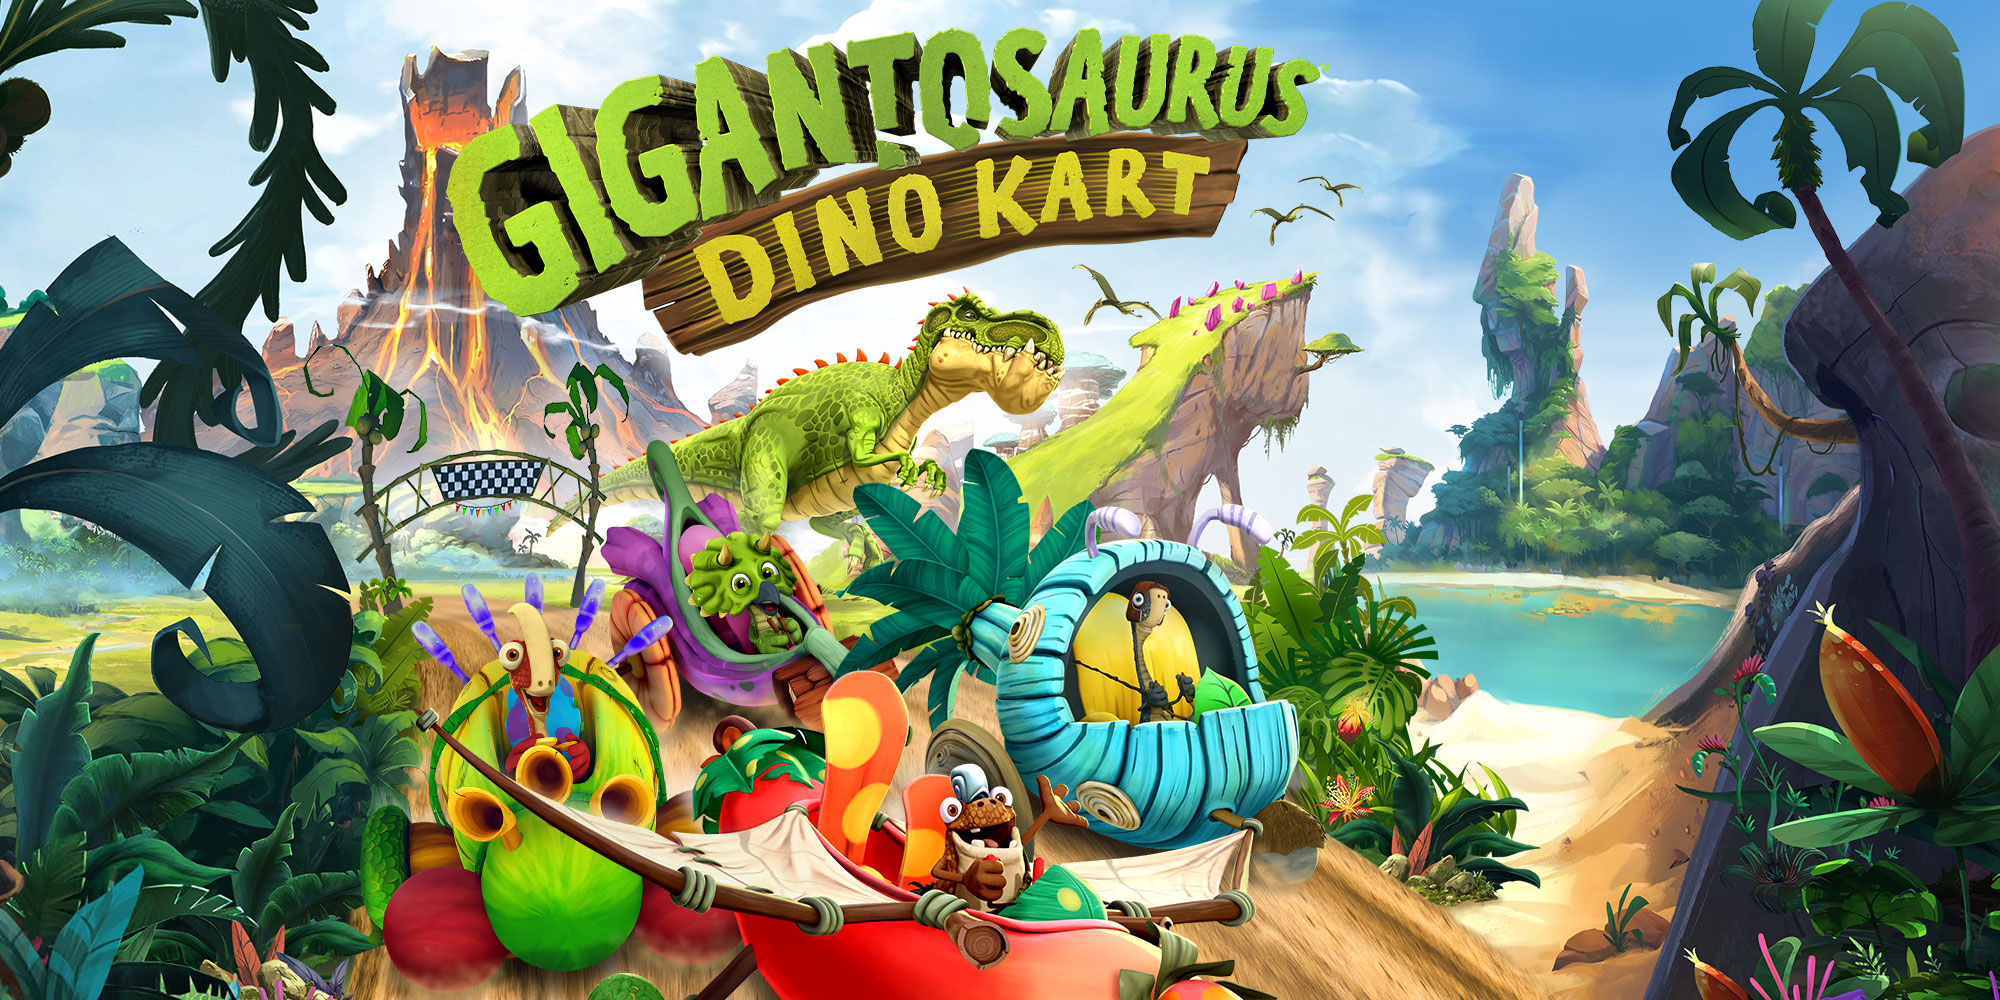 Gigantosaurus: Dino Kart ist ein kinderfreundlicher Racer Titel